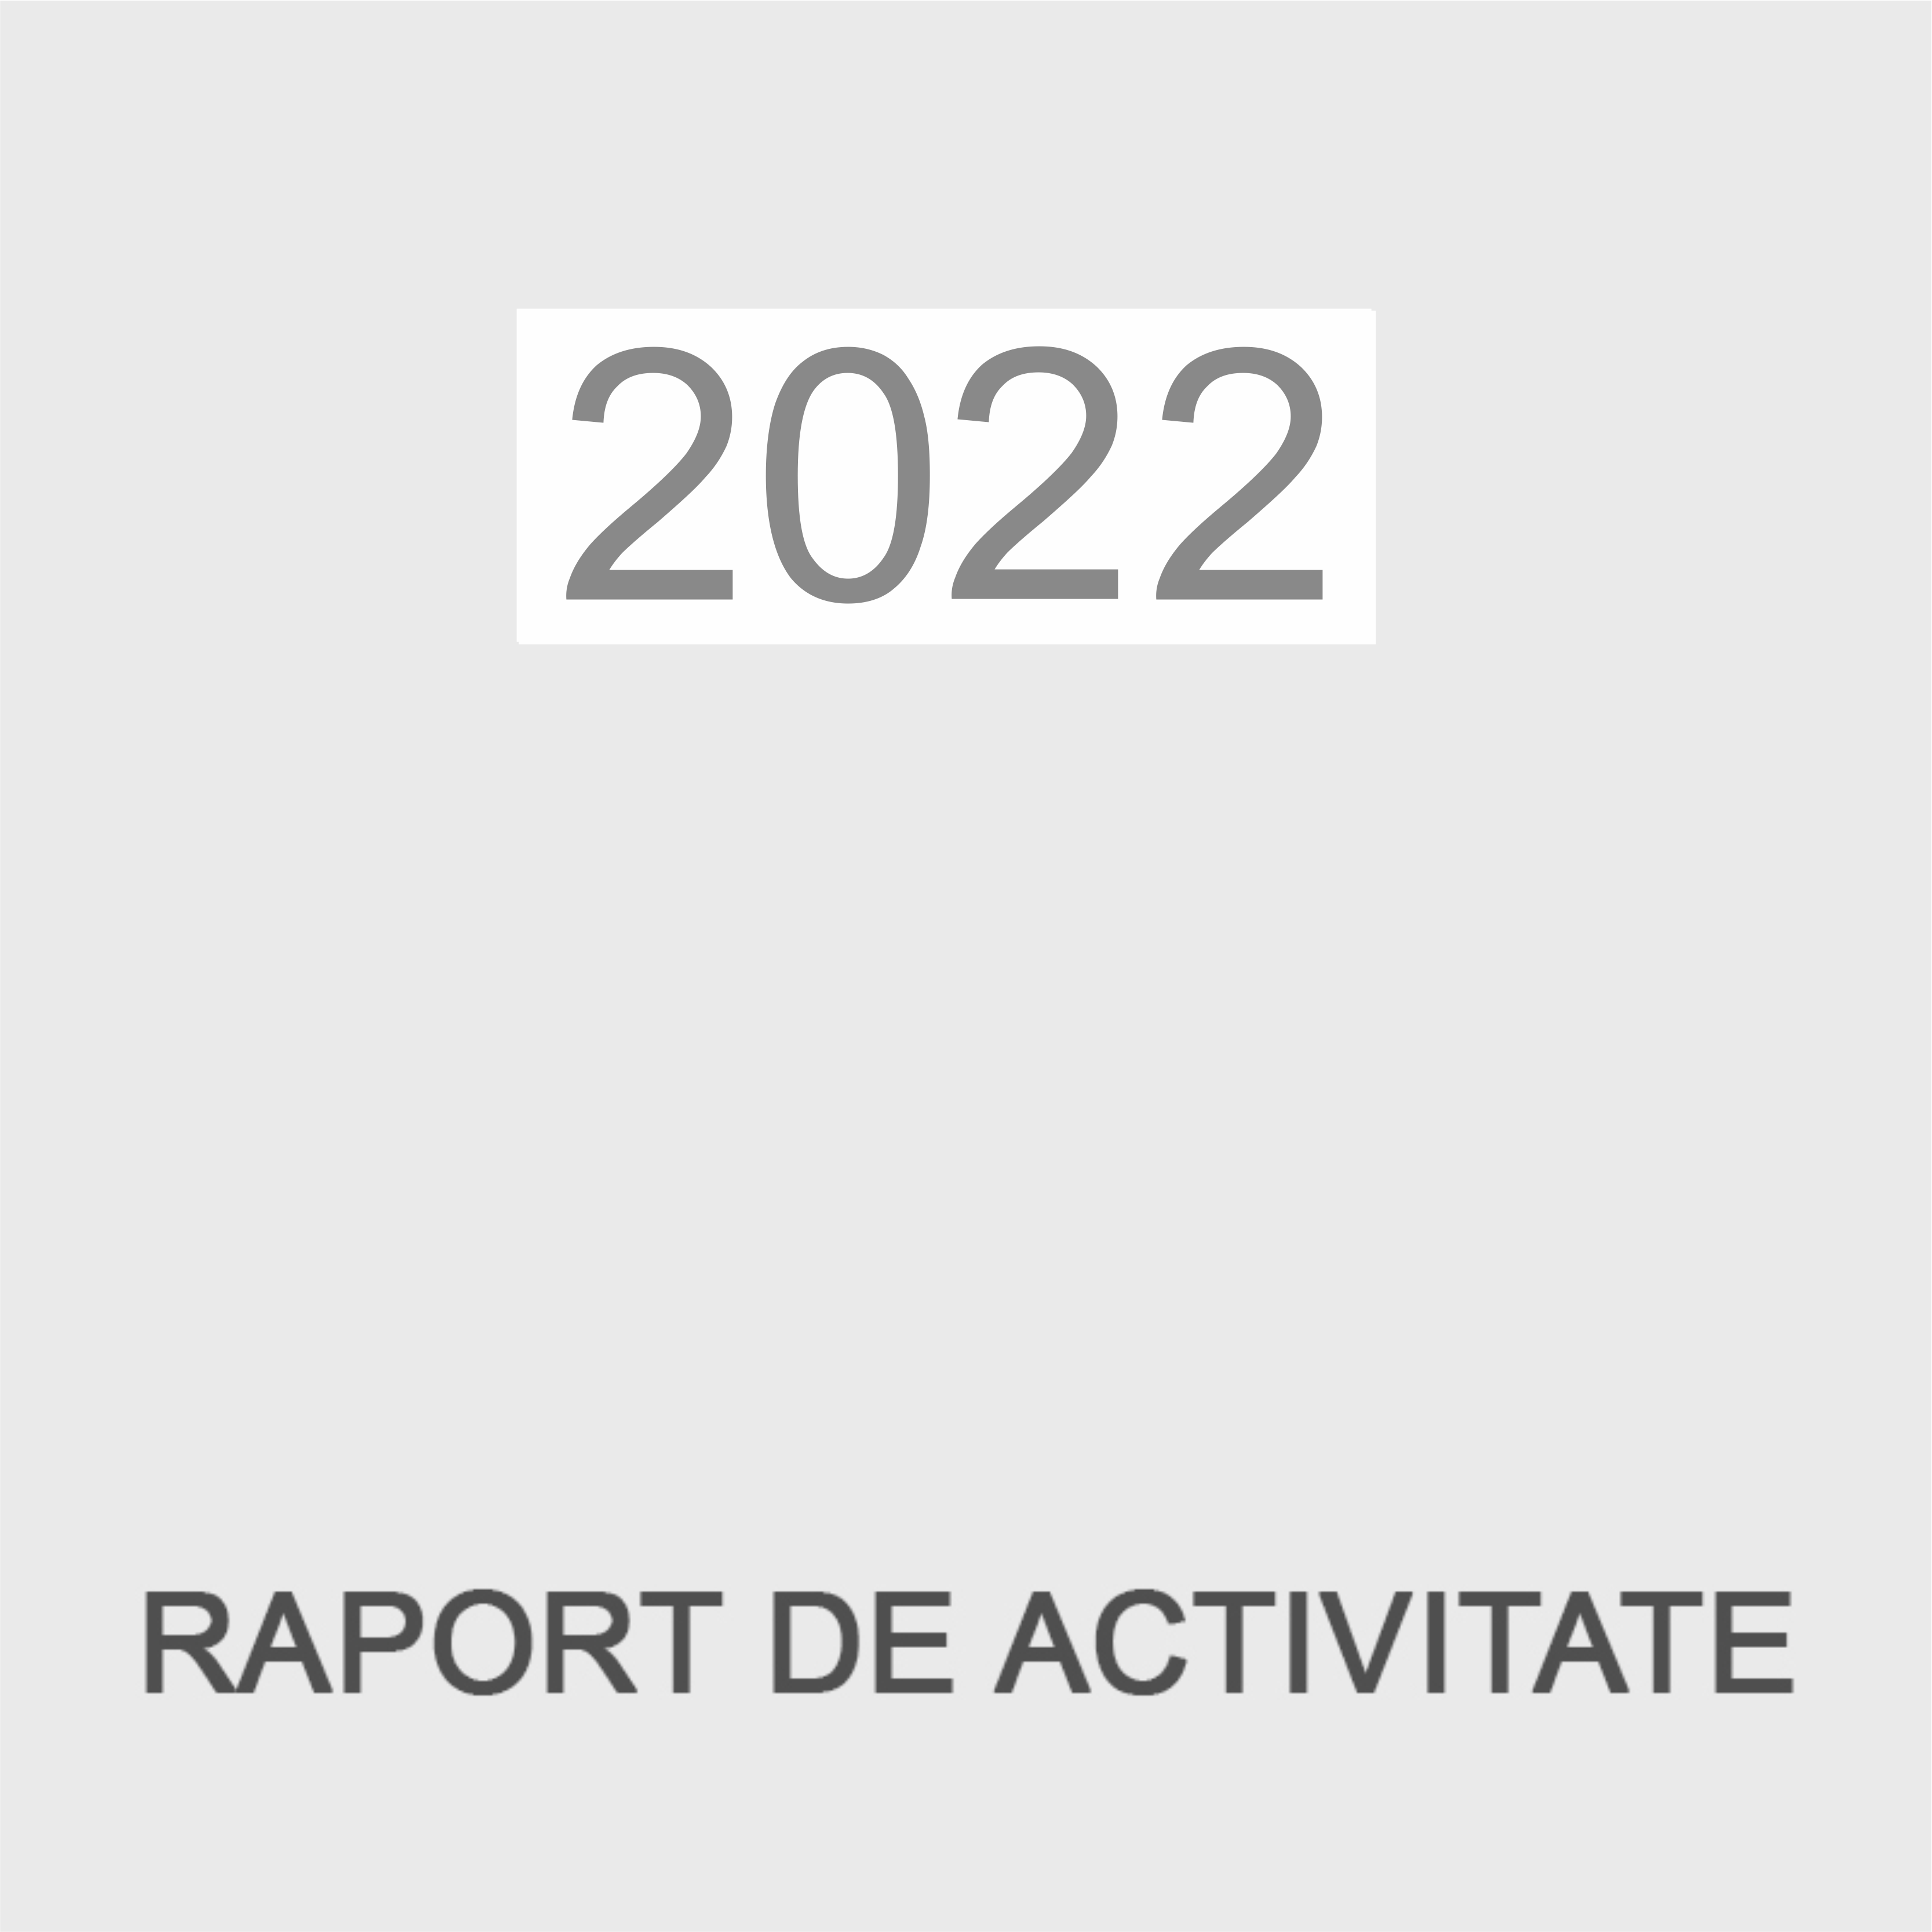 2022 raport